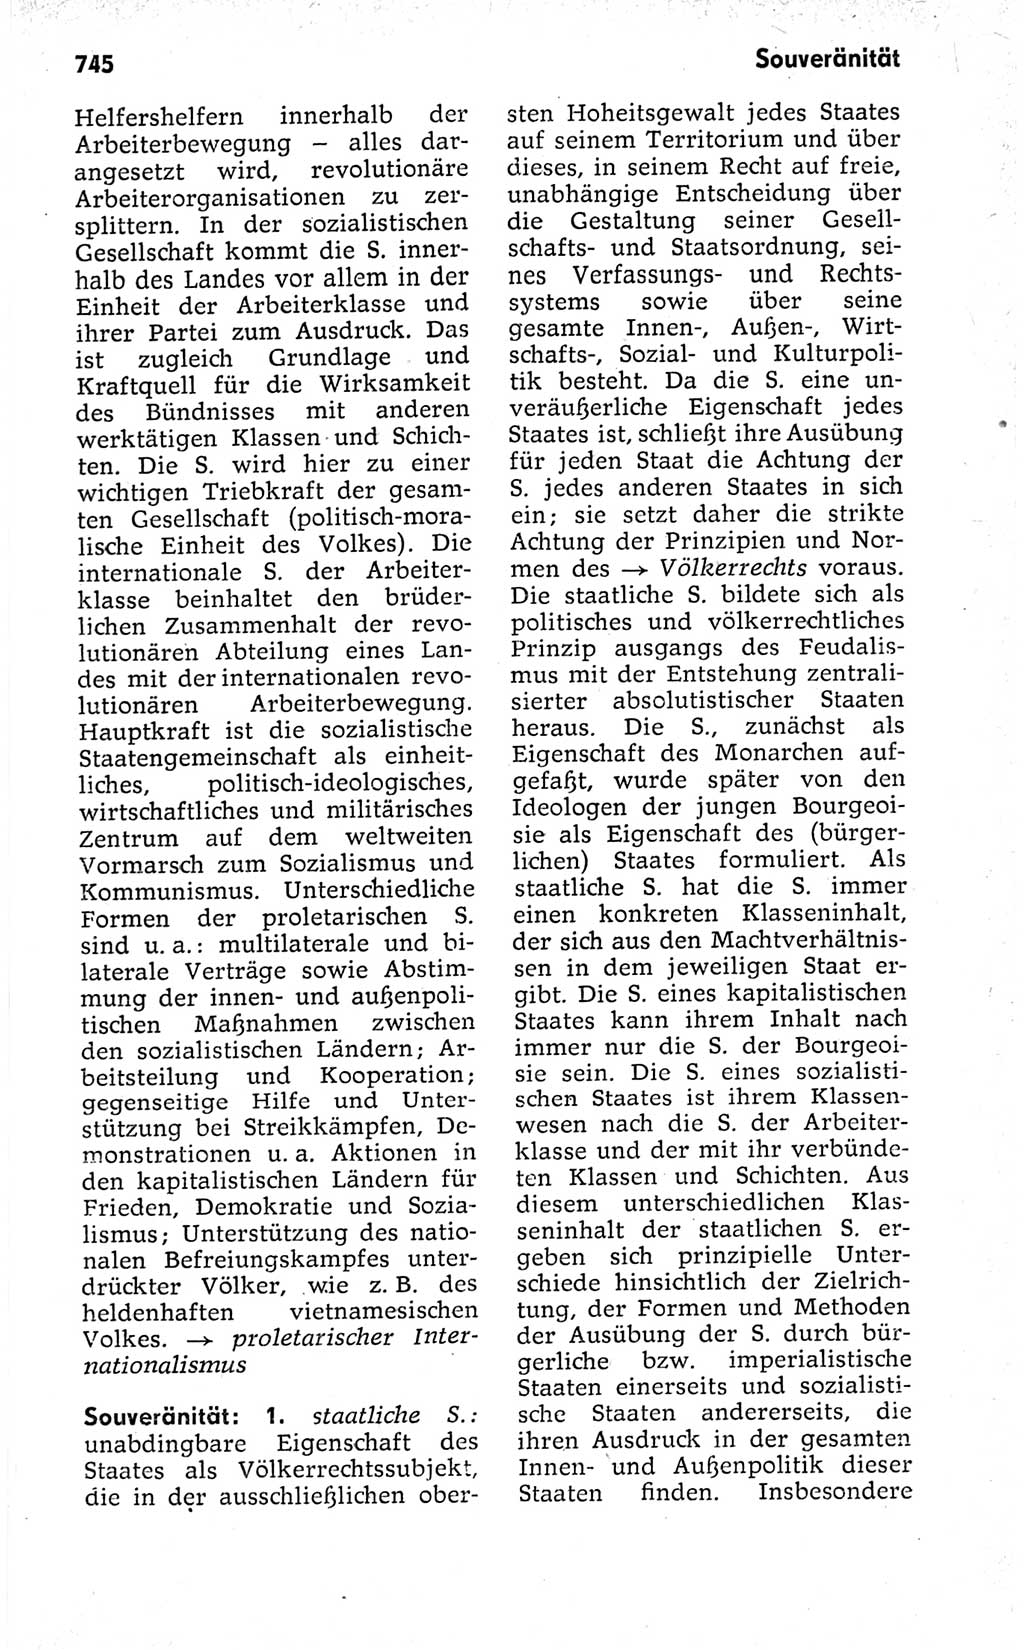 Kleines politisches Wörterbuch [Deutsche Demokratische Republik (DDR)] 1973, Seite 745 (Kl. pol. Wb. DDR 1973, S. 745)